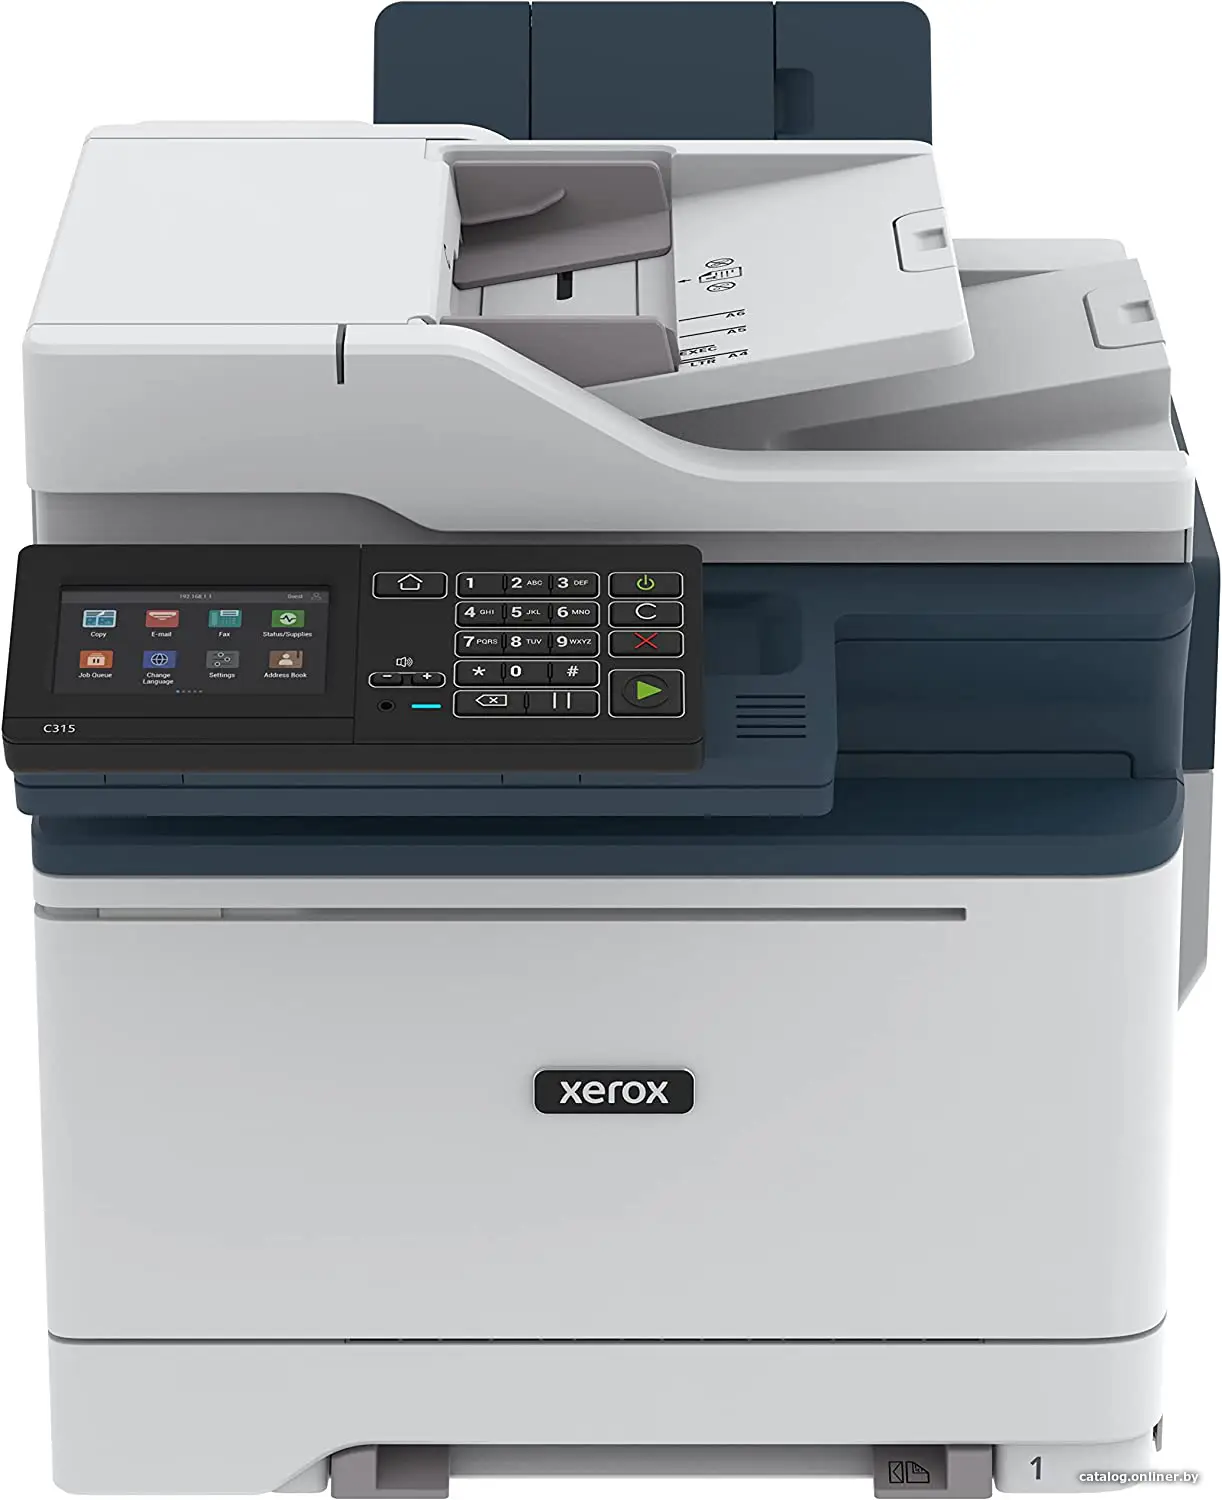 Купить МФУ лазерный Xerox C315V_DNI, цена, опт и розница